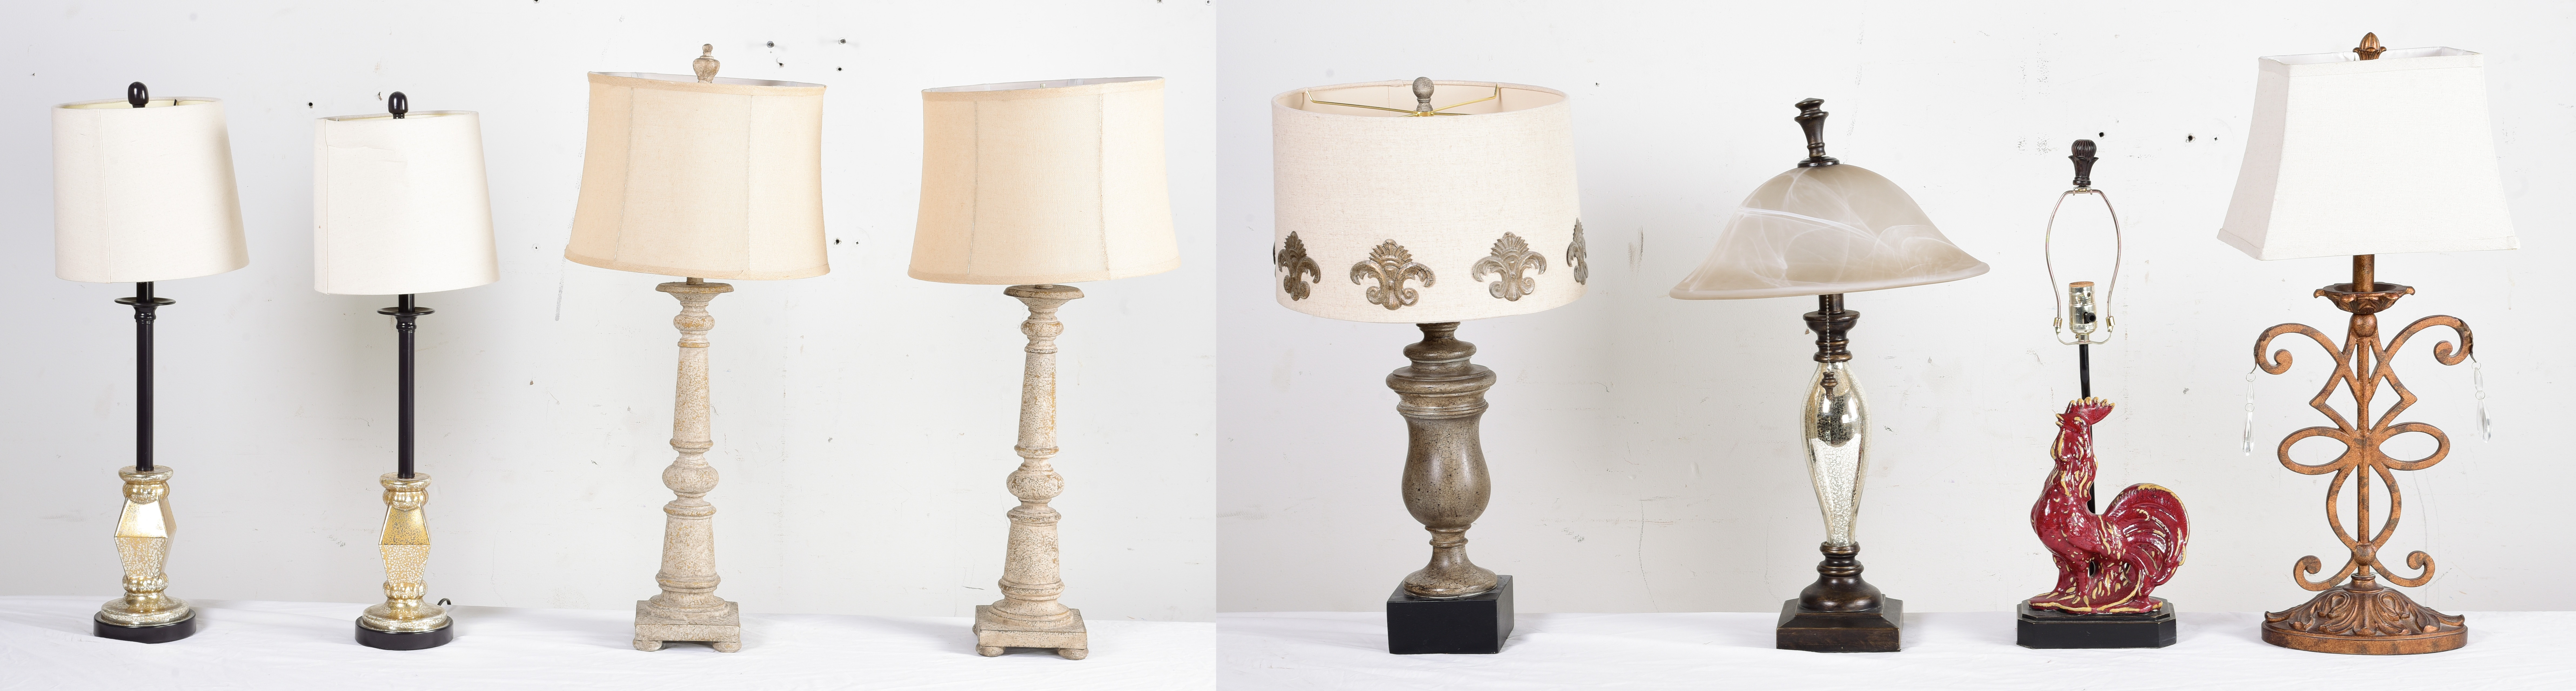 Lot of 9 decorative lamps c o 3ca5a8